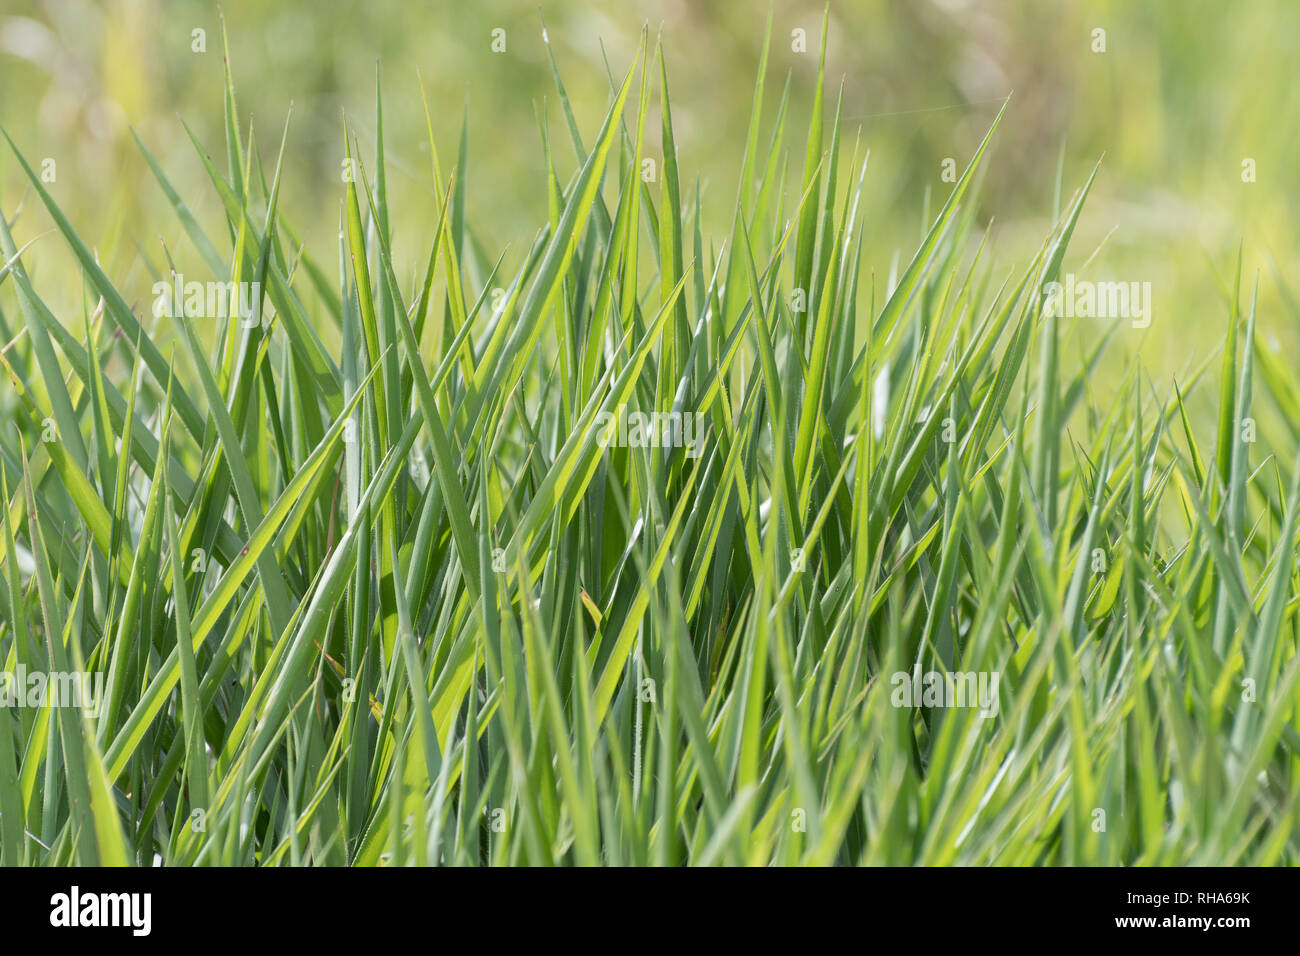 Blades der hohen Frische üppige gesunden grünen Gras wachsen in einem Feld. Hintergrund verschwommen. Nur Gras. Isoliert. Stockfoto